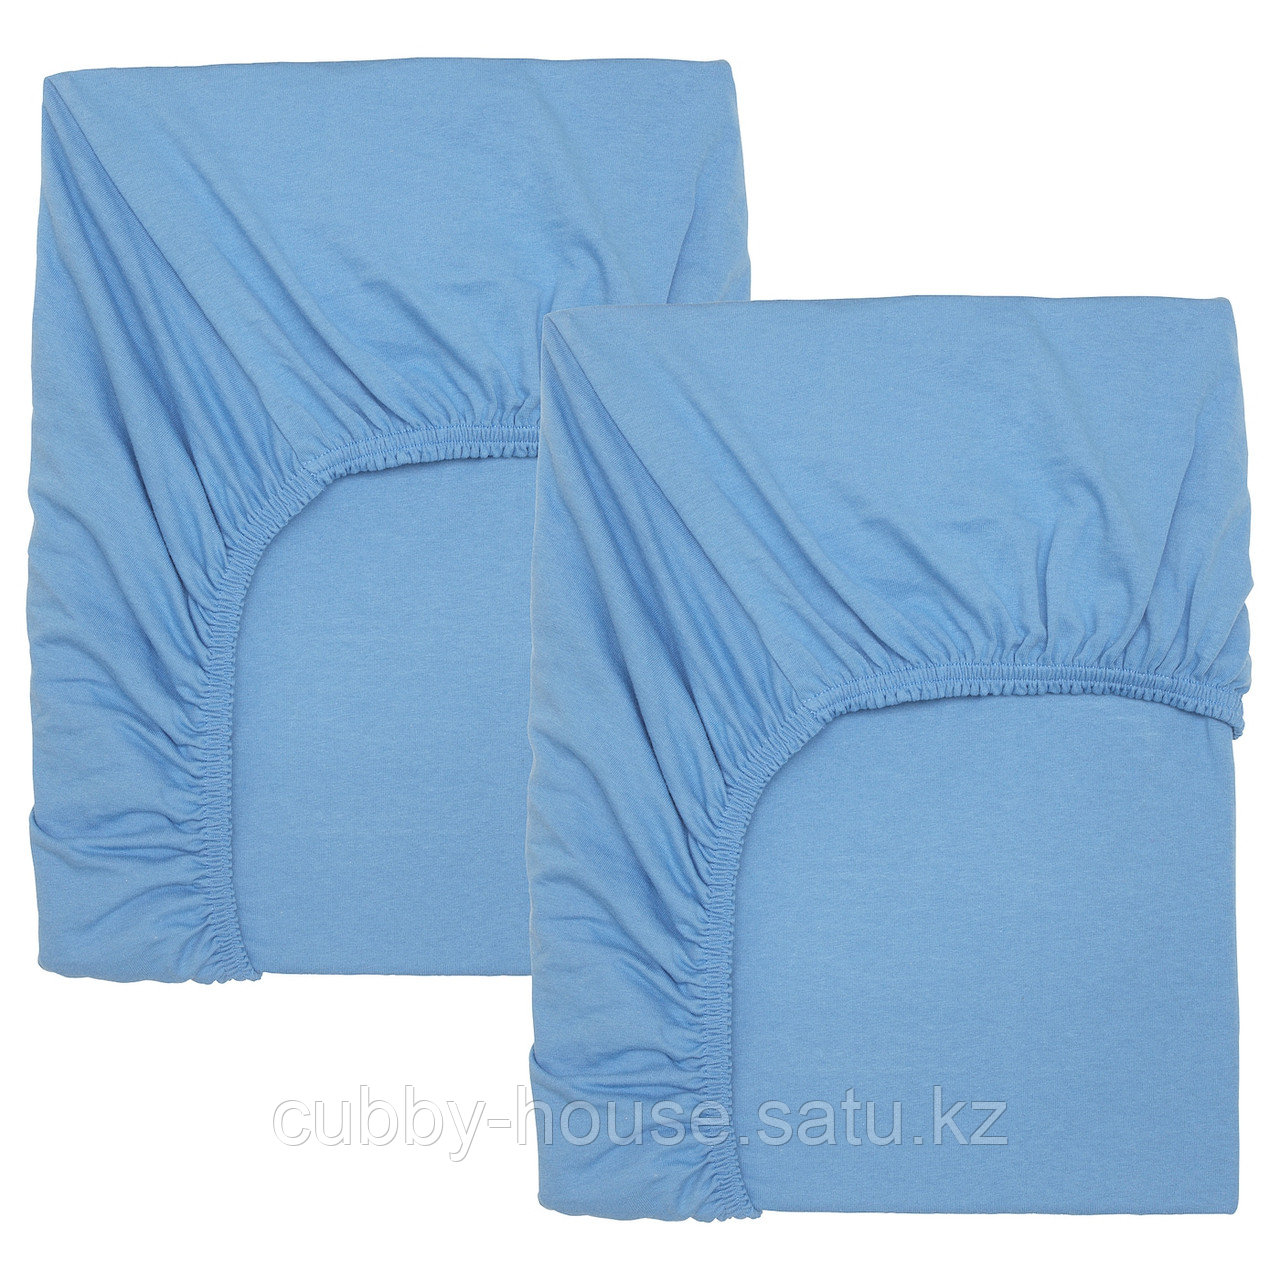 ЛЕН Простыня натяжн для кроватки, голубой, 60x120 см